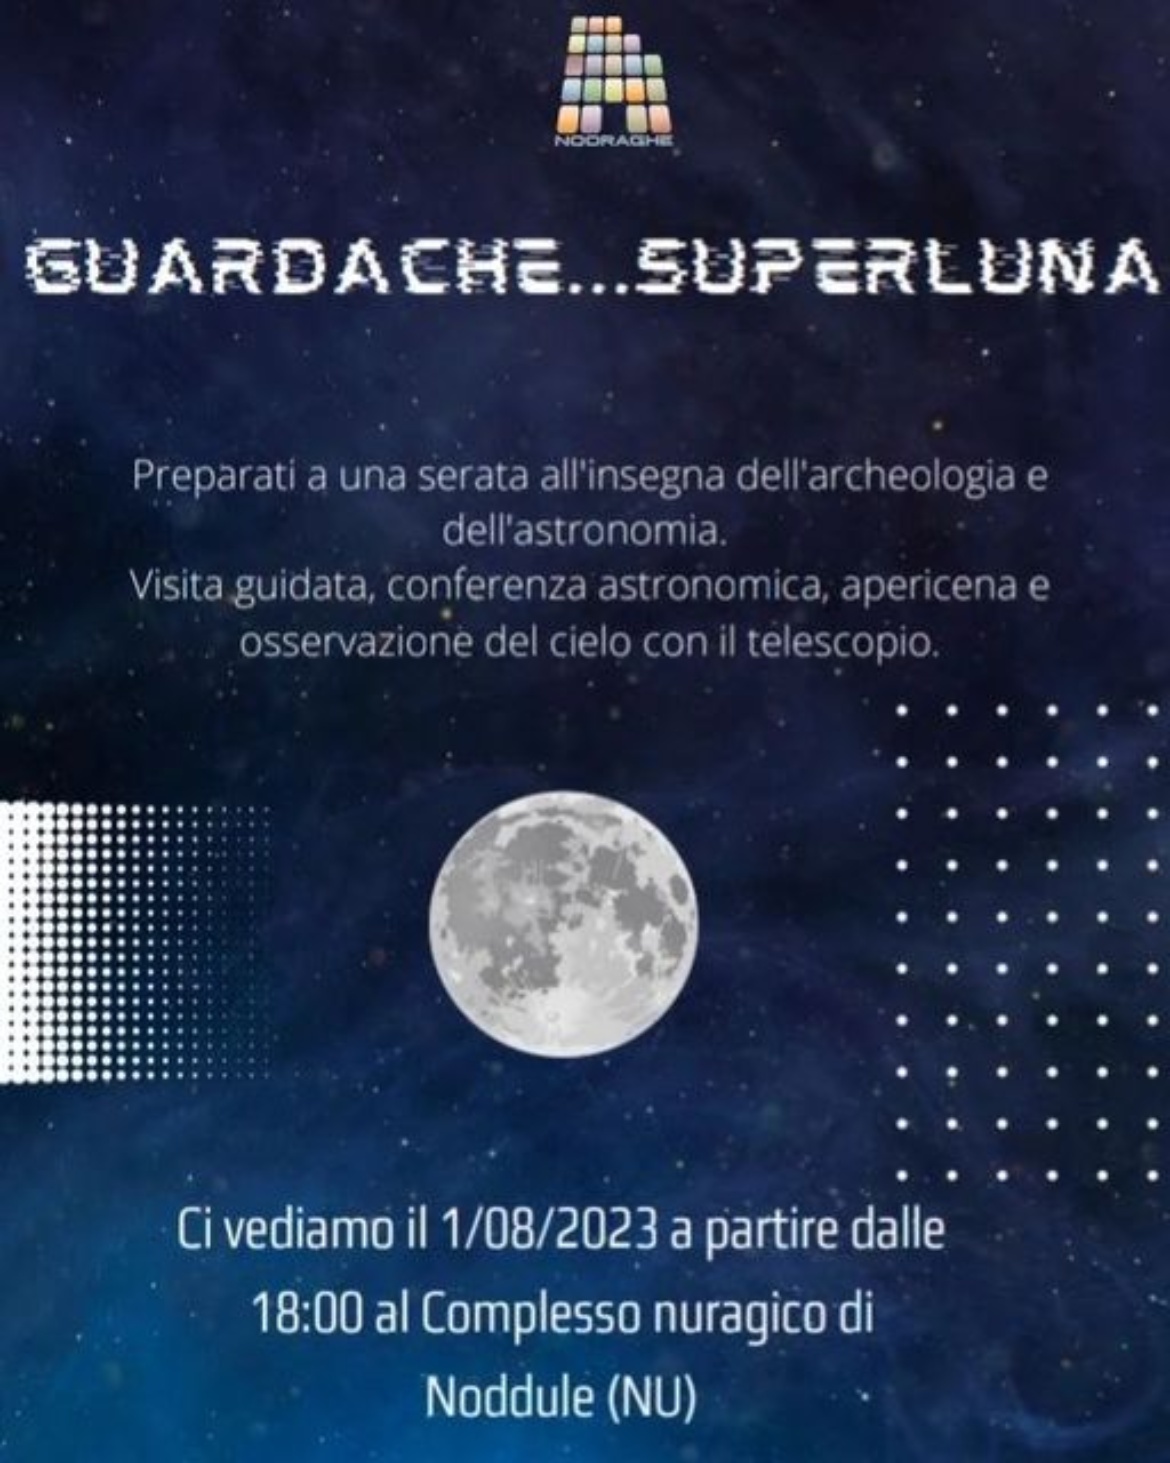 Visualizza la sezione: COMPLESSO NURAGICO DI NODDULE | GUARDA CHE SUPERLUNA! 1 AGOSTO 2023